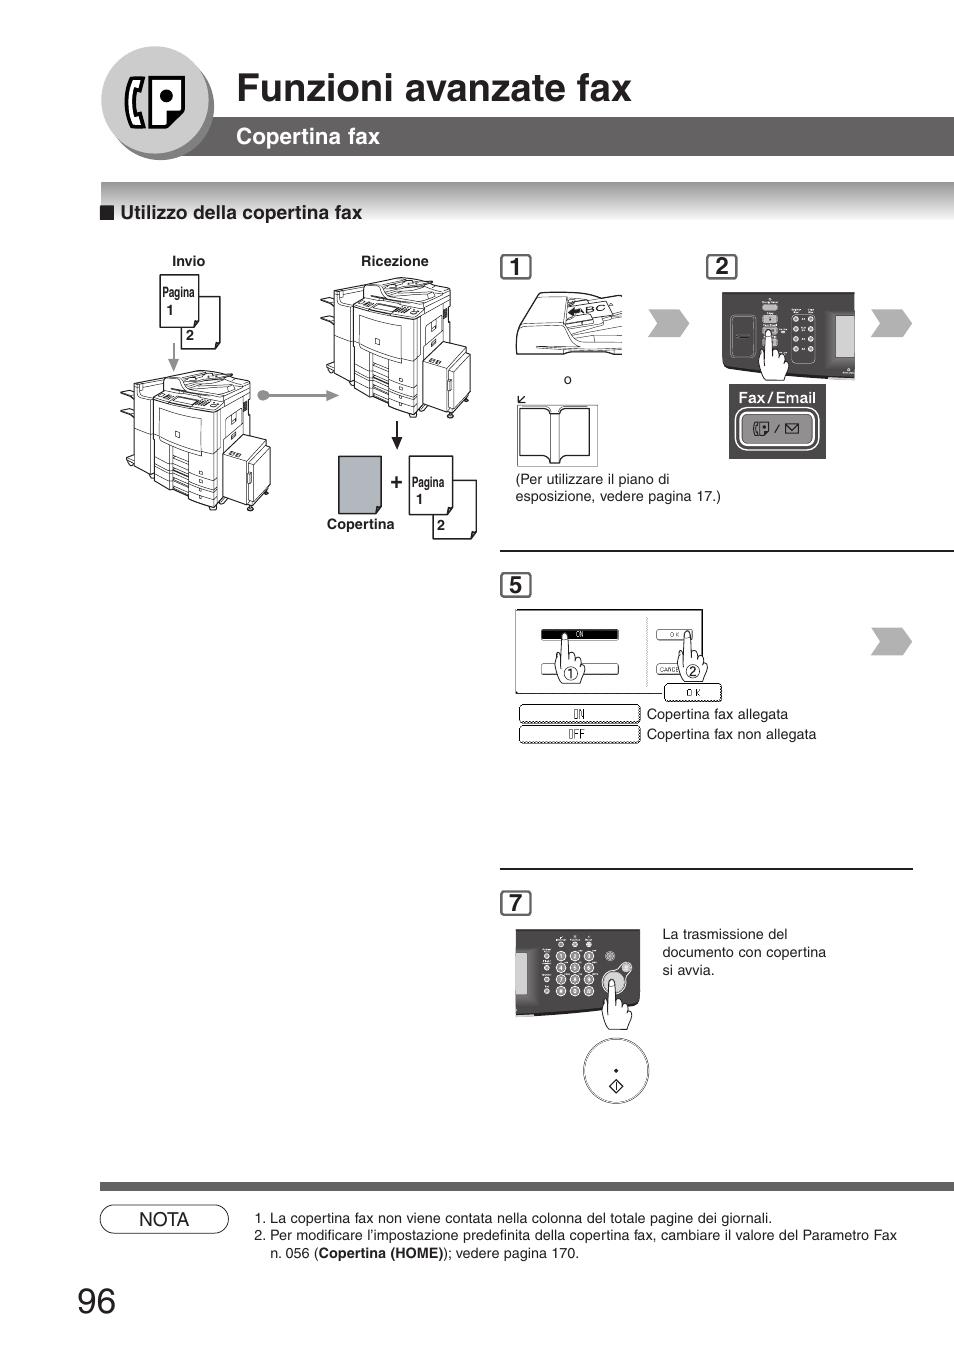 Copertina fax, Utilizzo della copertina fax, Funzioni avanzate fax | Panasonic DP8035 Manuale d'uso | Pagina 96 / 196